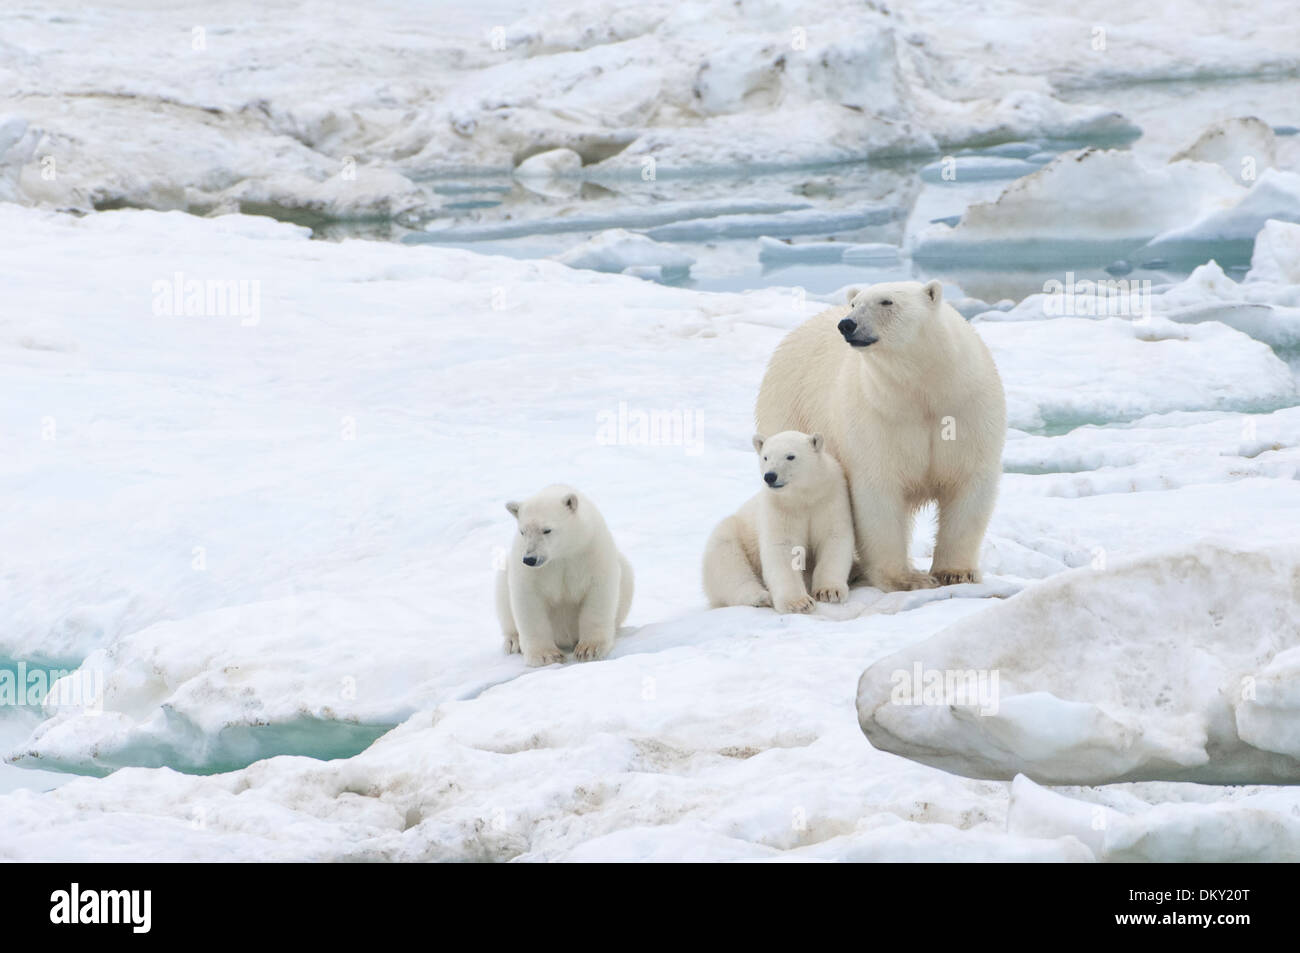 Mère ours polaire avec deux oursons (Ursus maritimus), l'île Wrangel, Chuckchi Mer, Extrême-Orient russe Banque D'Images